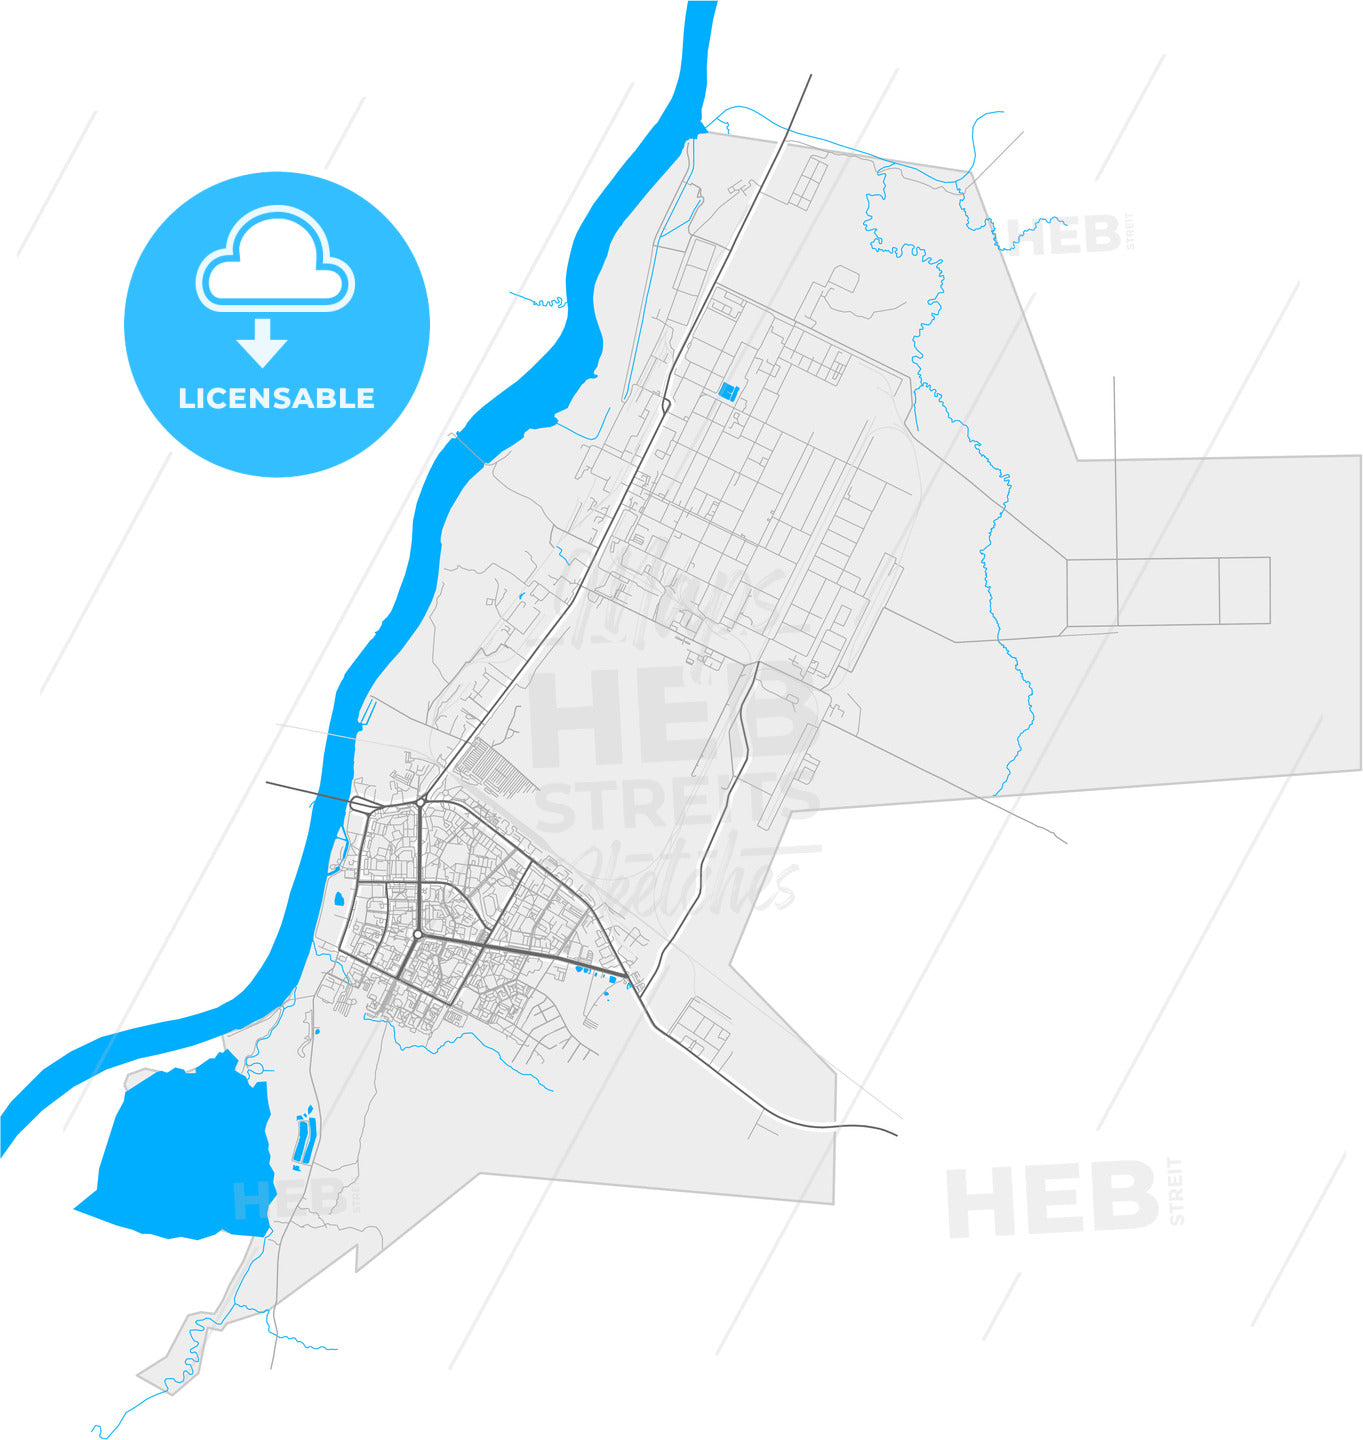 Kirishi, Leningrad Oblast, Russia, high quality vector map